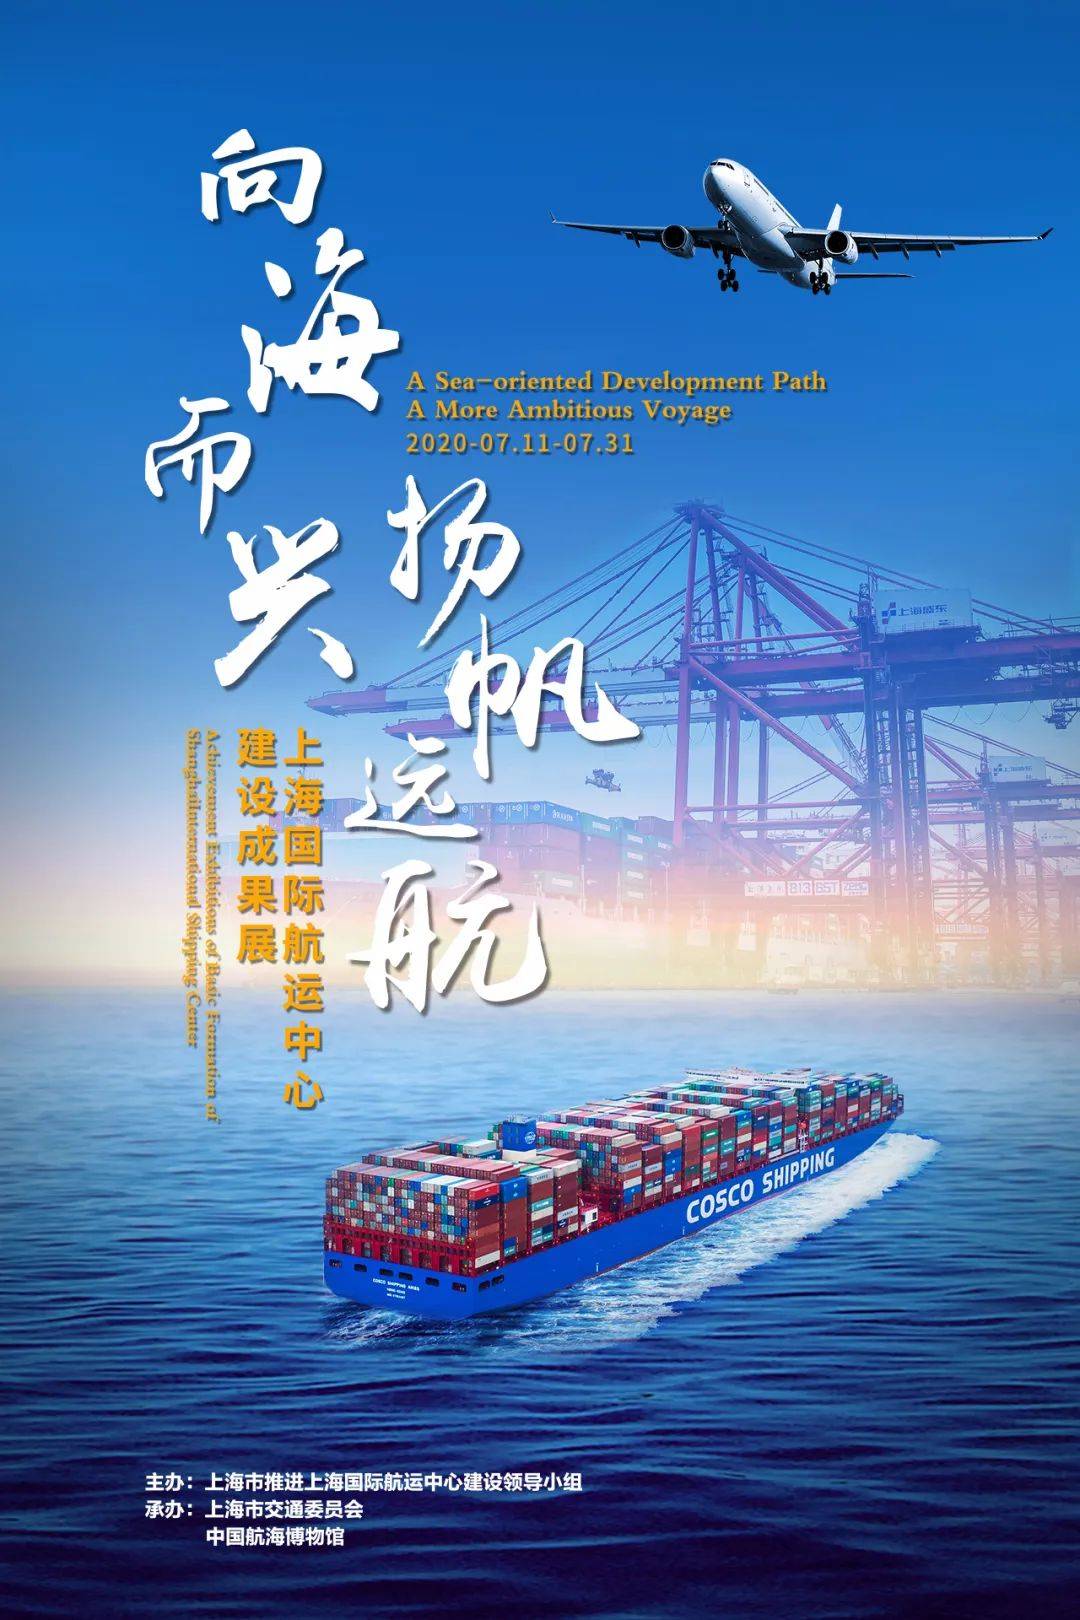 作者:中国航海博物馆 王蔓蔓《上海国际航运中心建设成果展》海报中国